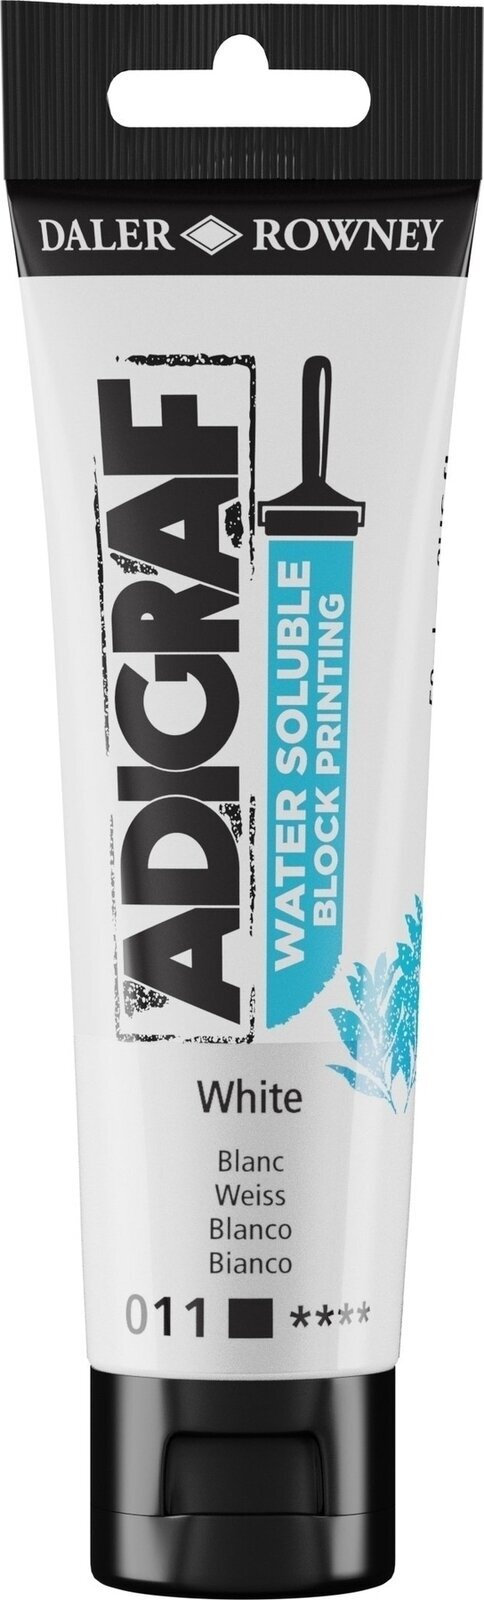 Boja za linorez Daler Rowney Adigraf Block Printing Water Soluble Colour Boja za linorez White 59 ml